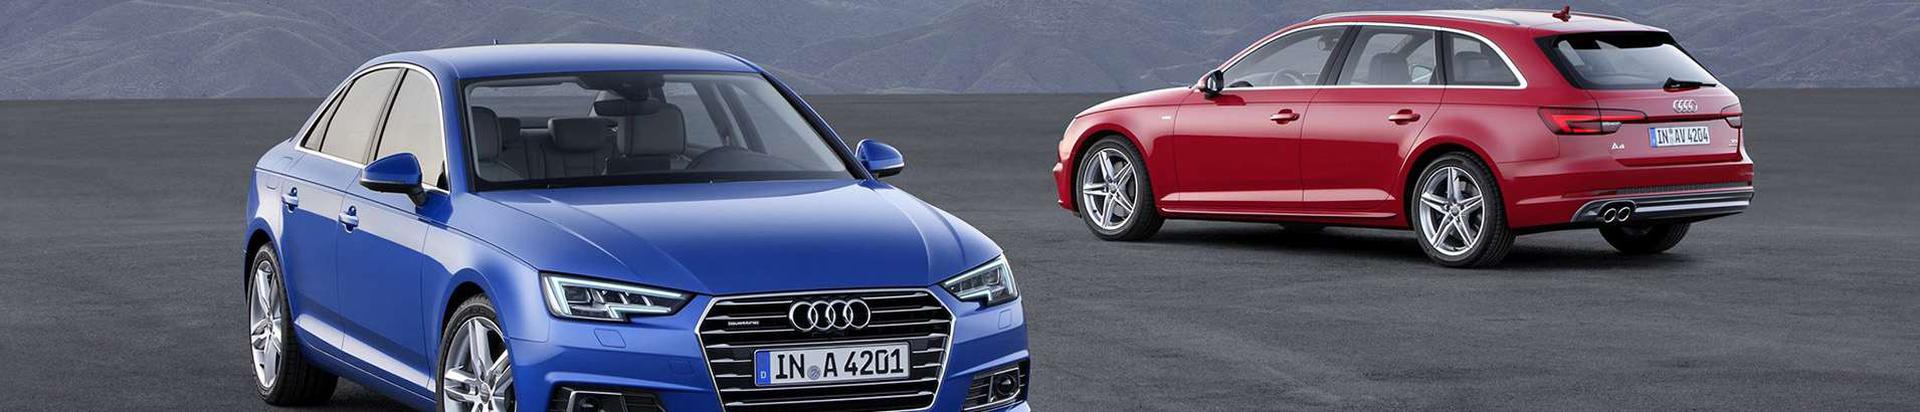 Audi – lai preemiumsõidukite valik. Tutvu lähemalt kõikide Audi mudelitega Audi Eesti ametlikul veebilehel.